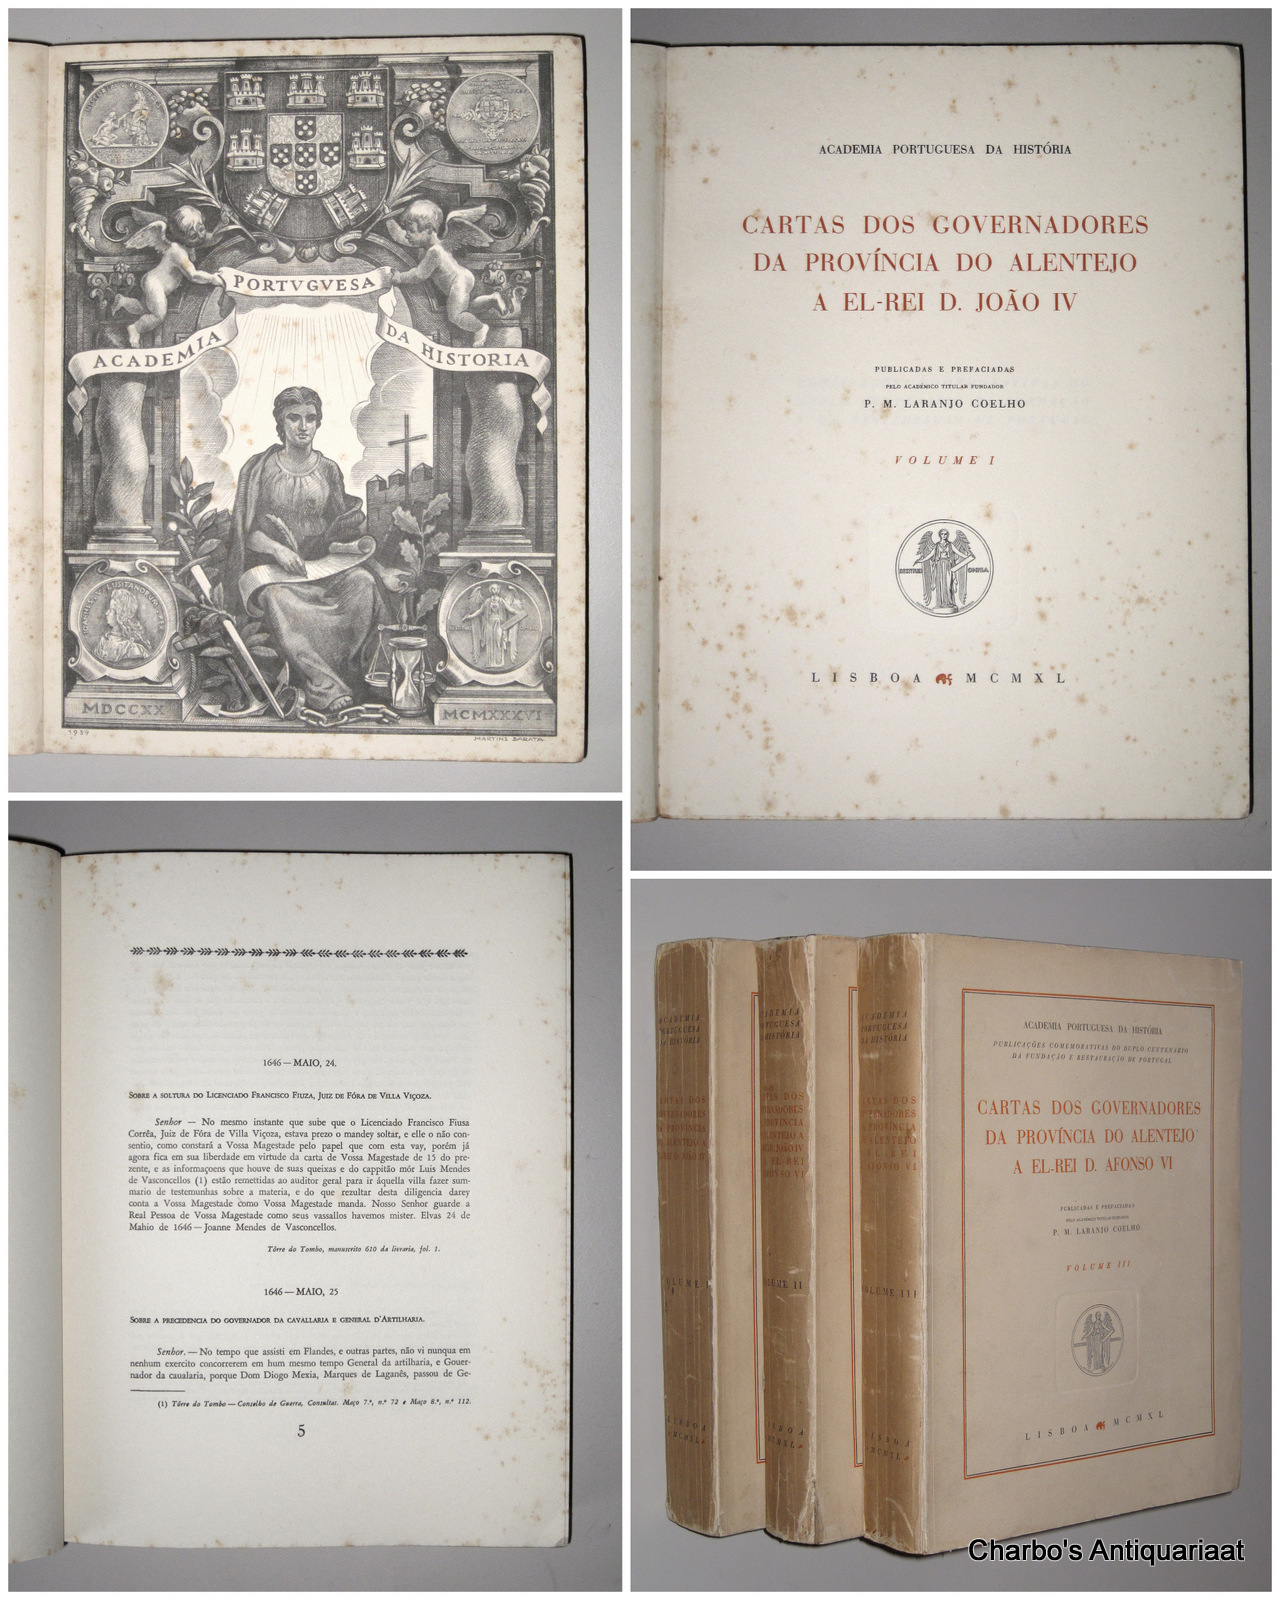 COELHO, P.M. LARANJO (ed.), -  Cartas dos Governadores da provincia do Alentejo a El-Rei D. Joao IV. (3 vol. set).